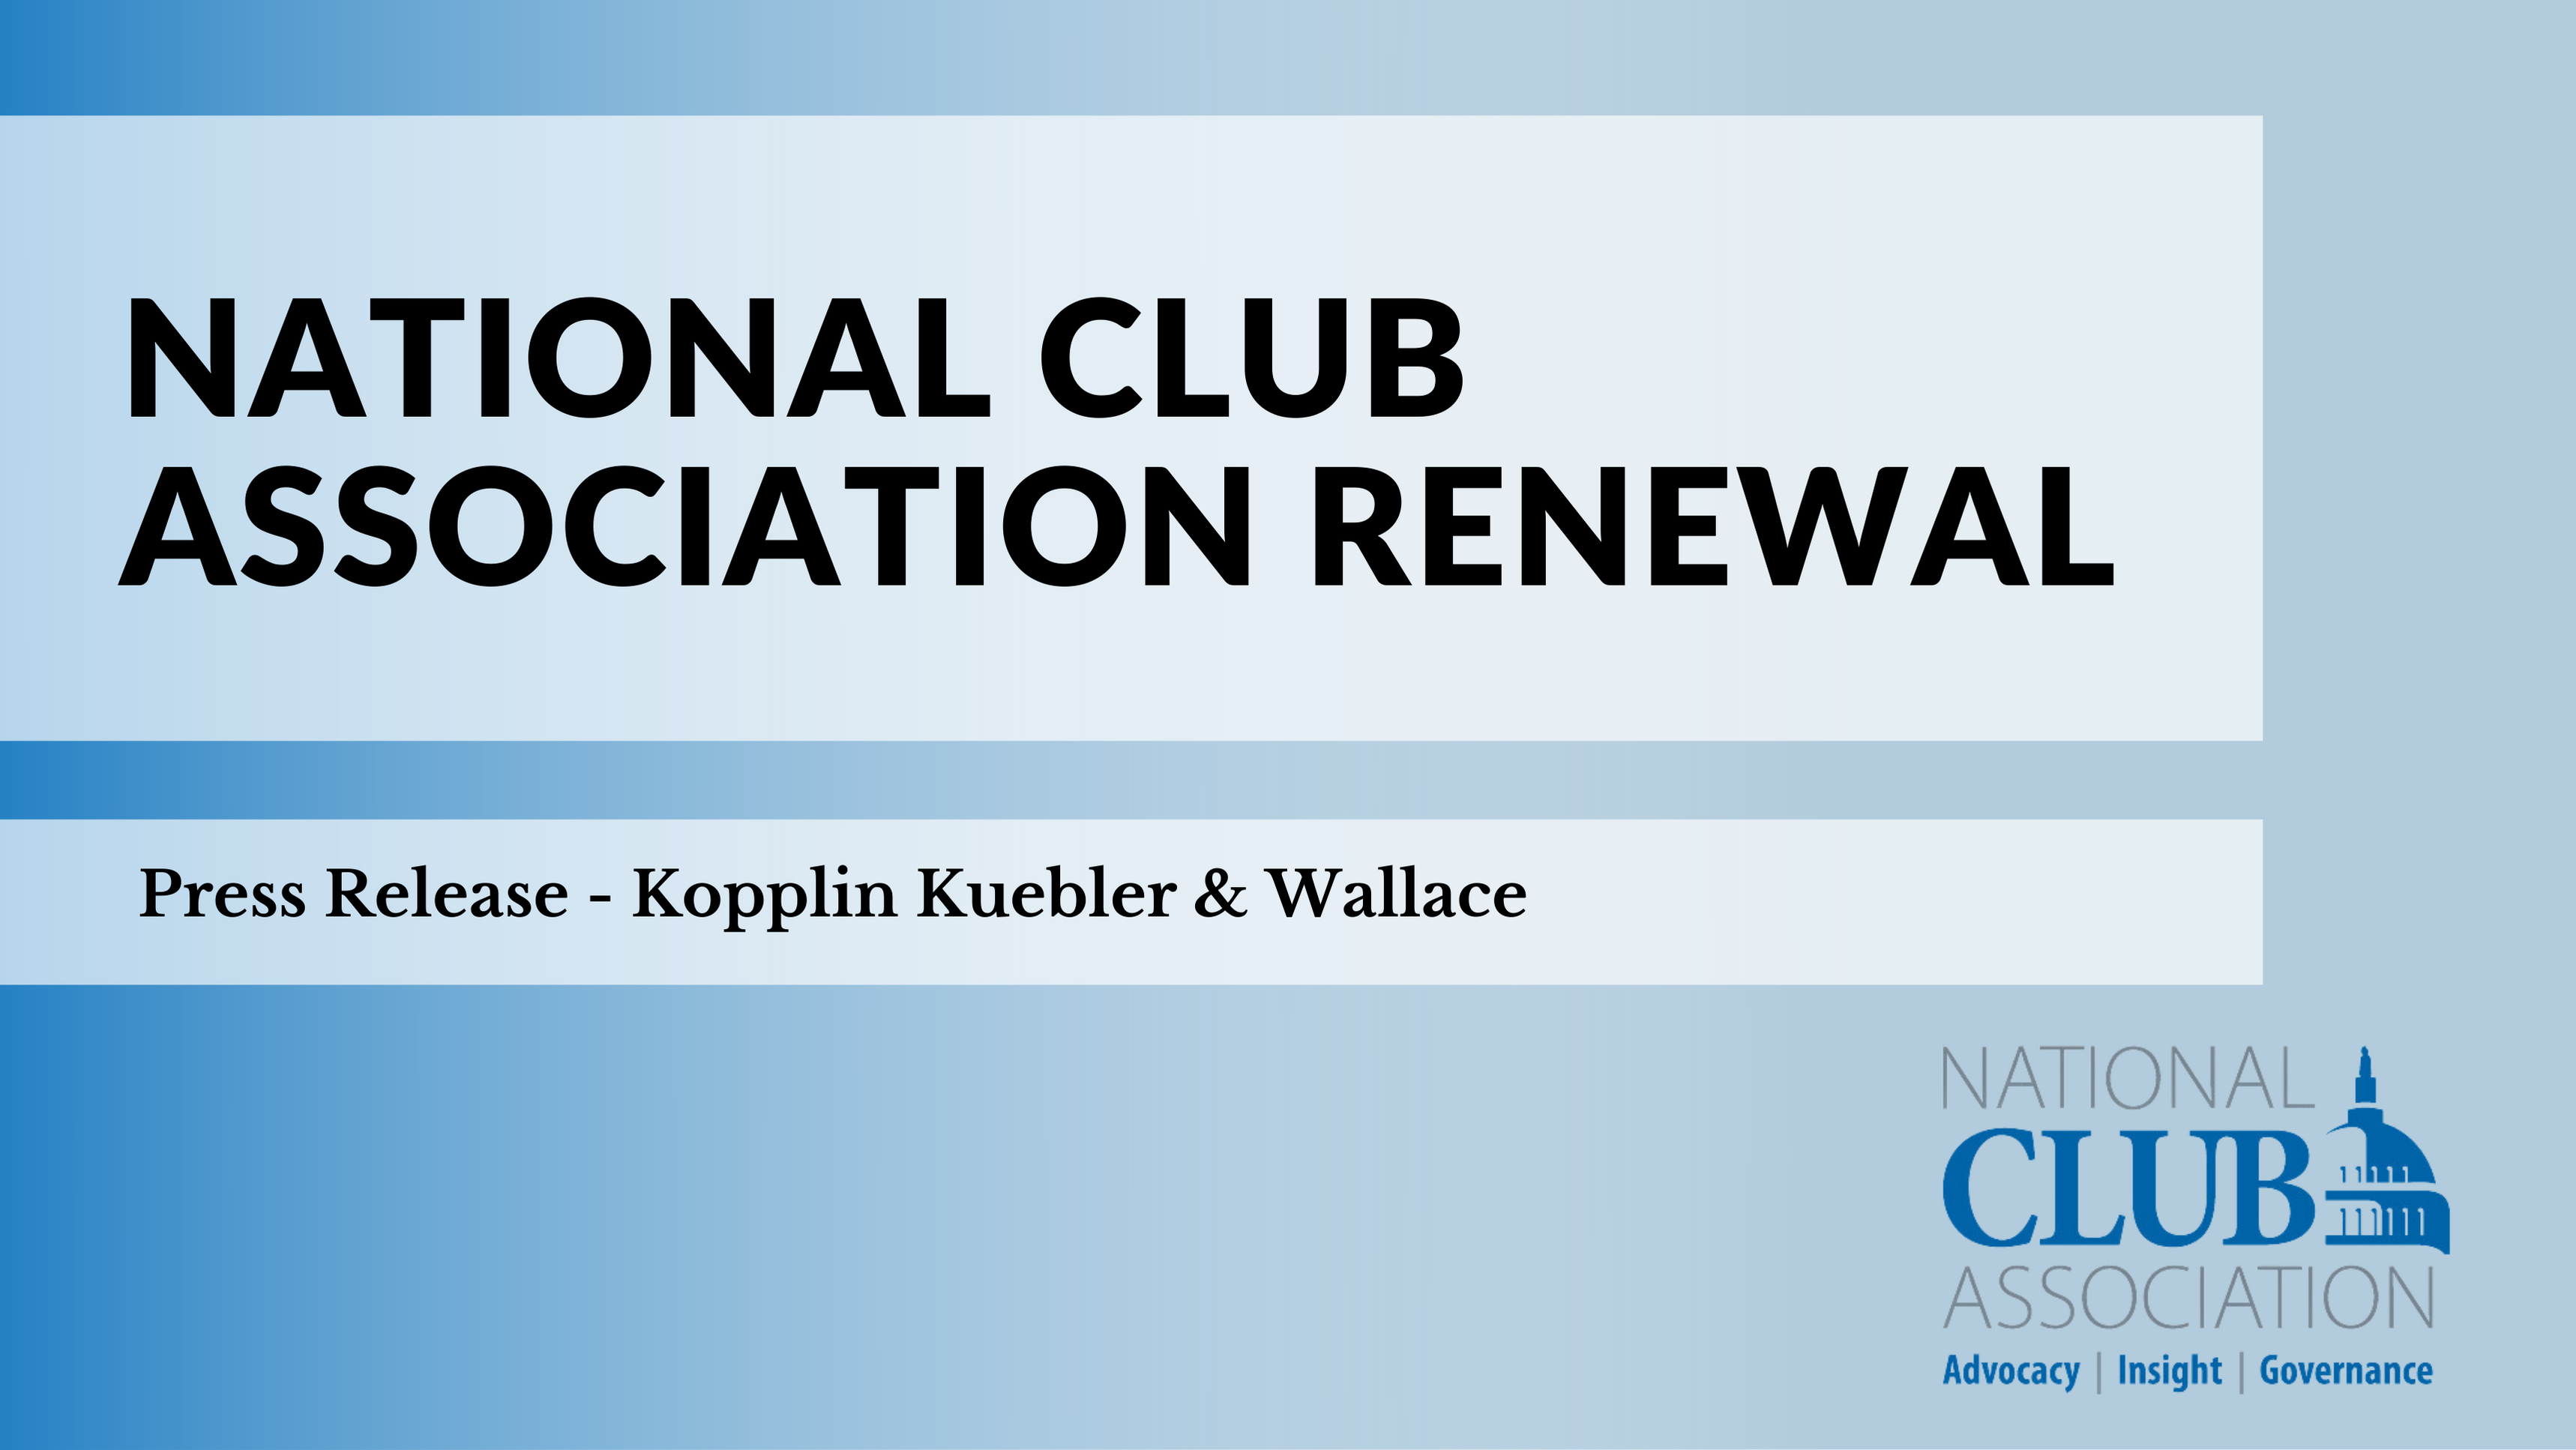 National Club Association Renewal